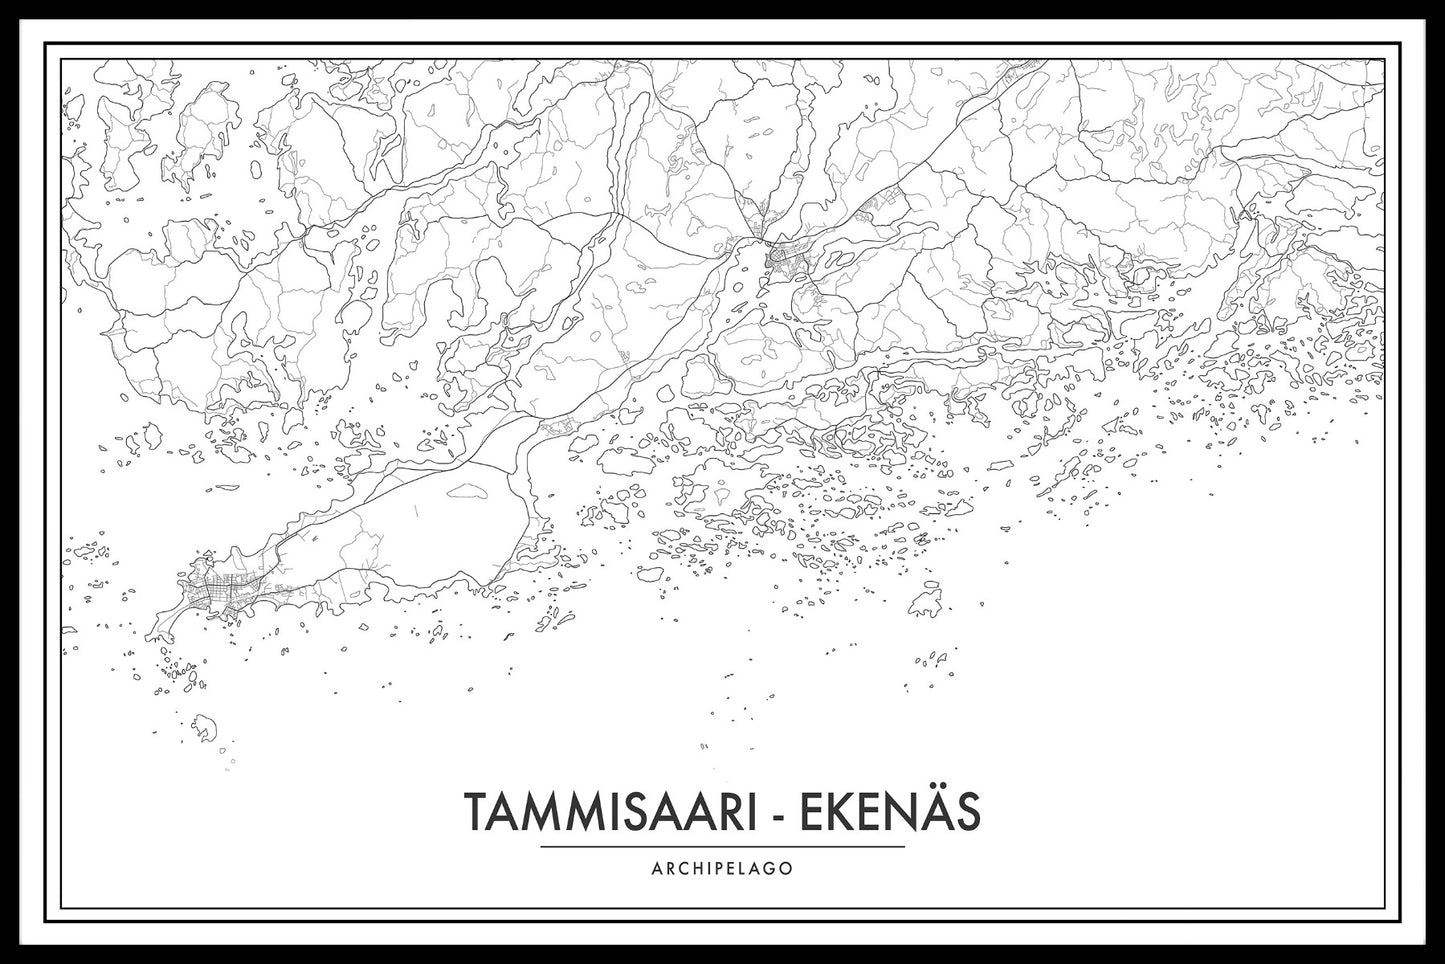  De kaartposter van de Tammisaari-archipel